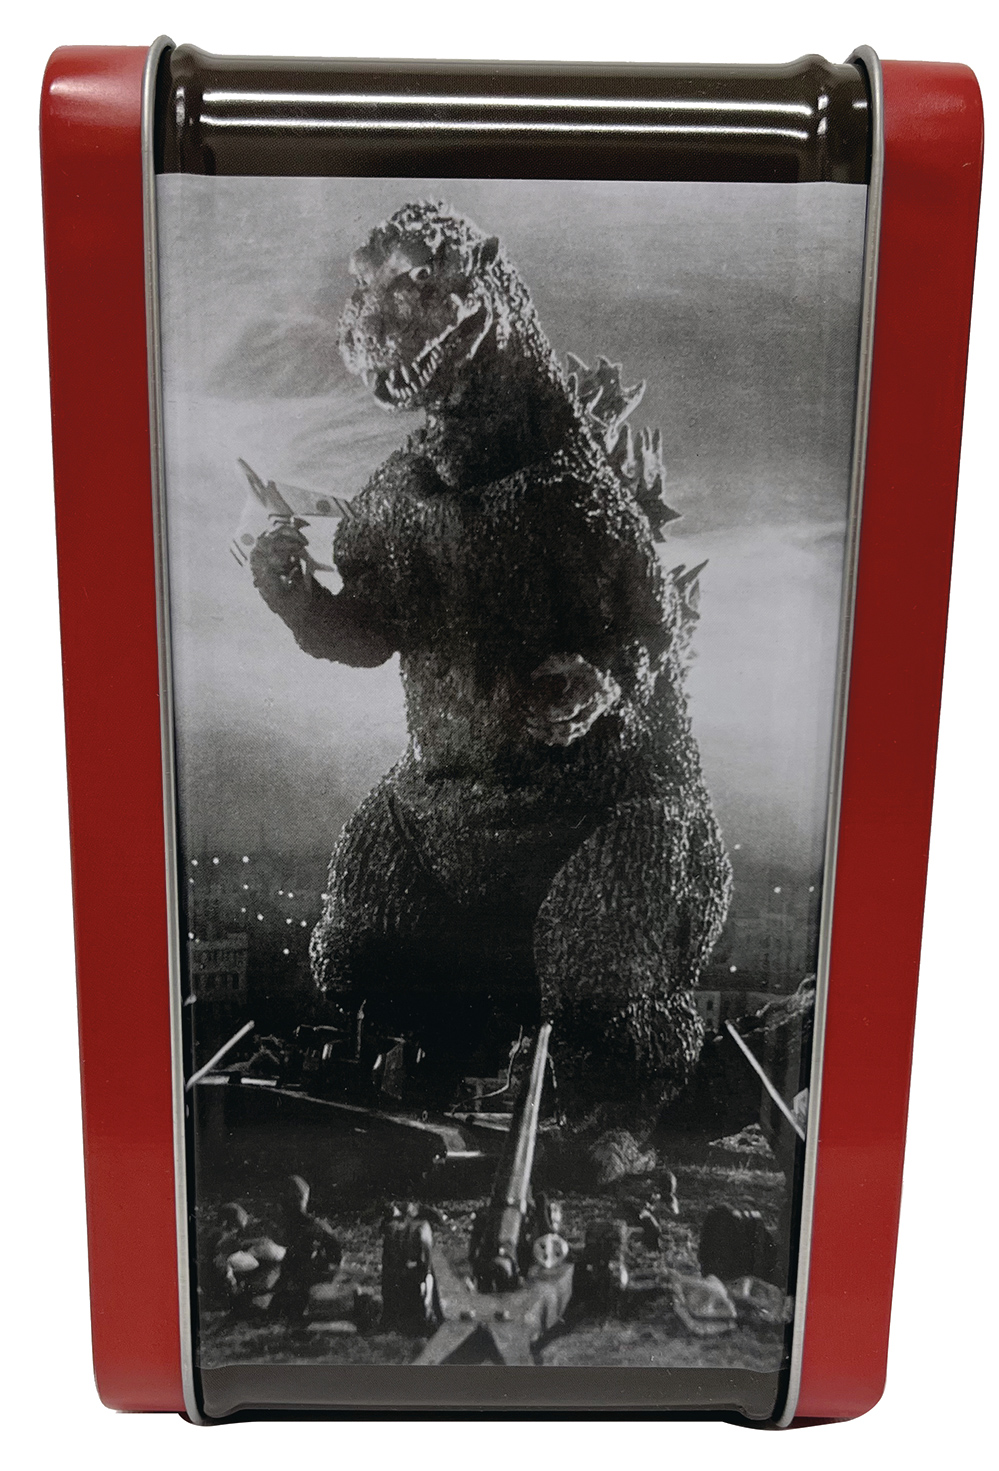 Lancheiras Godzilla 1954 e Godzilla vs. Mechagodzilla II 1993